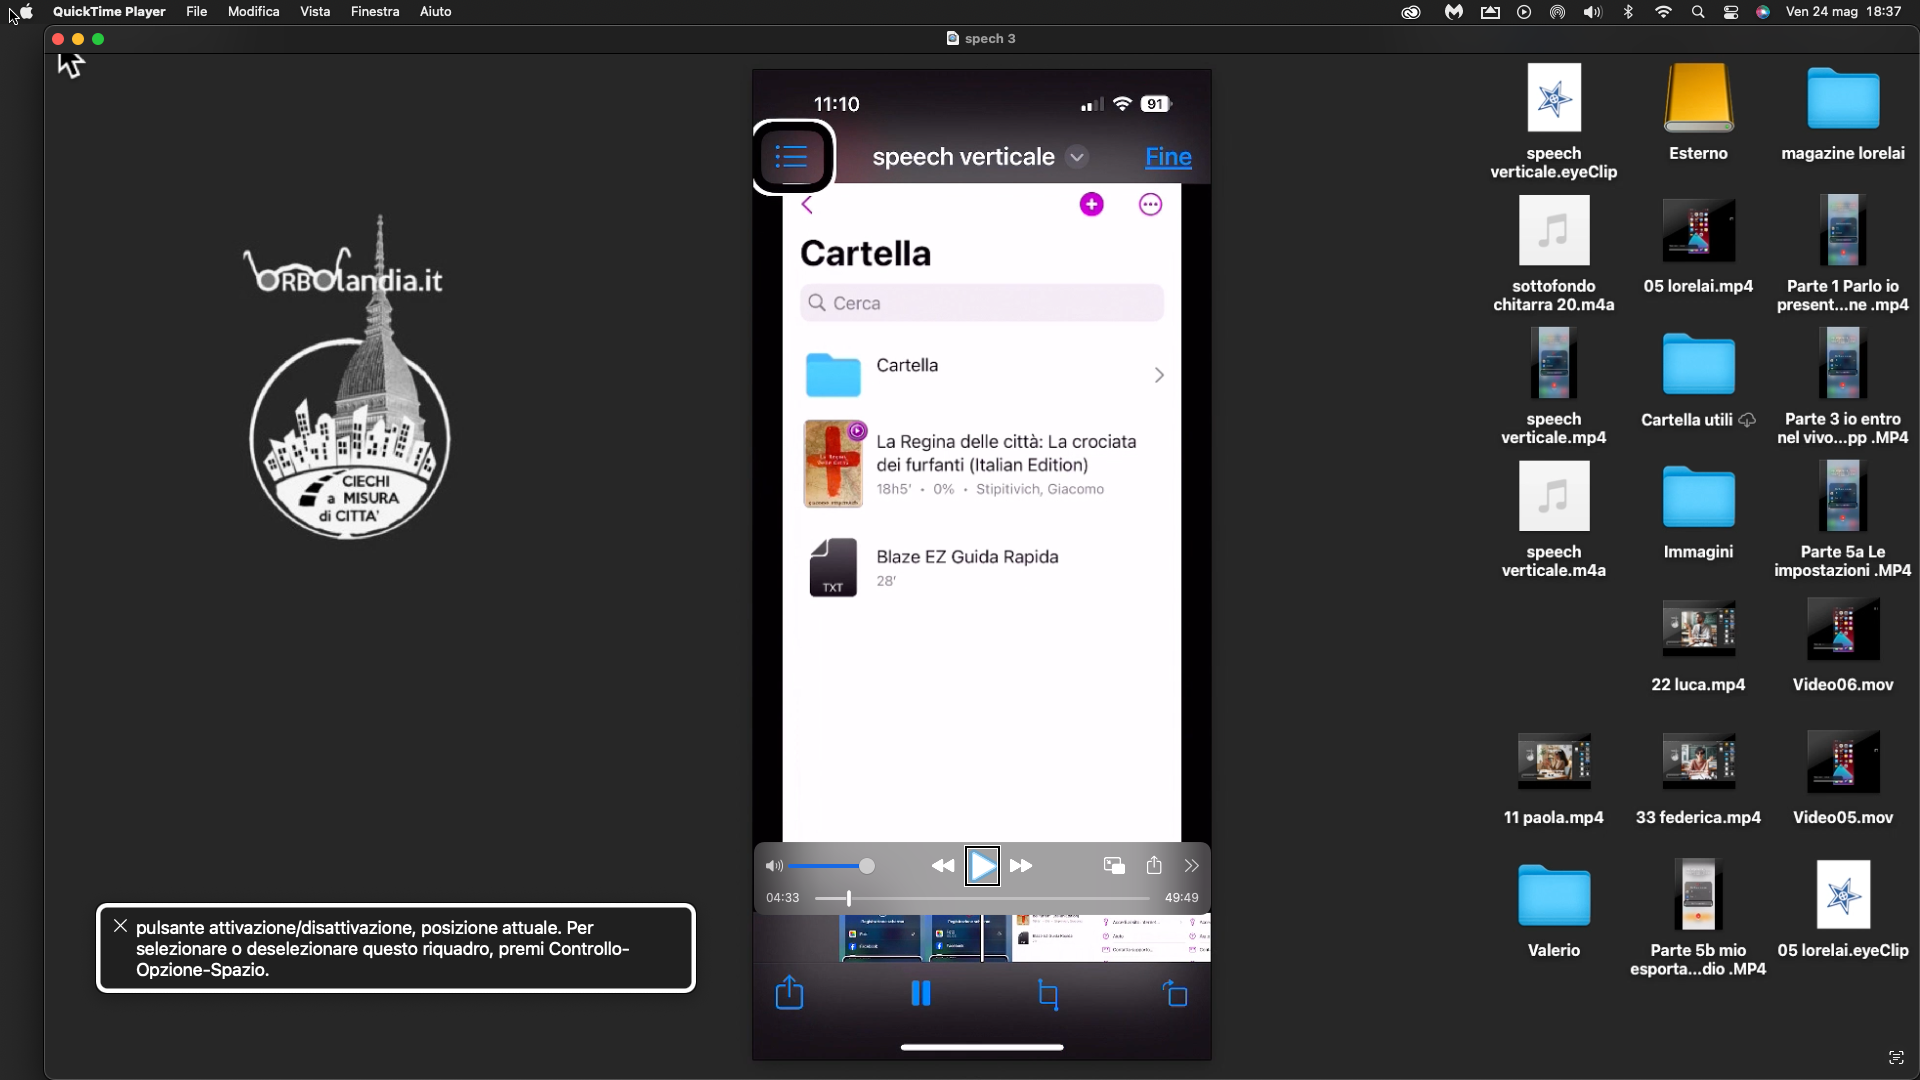 nell’immagine uno screenshot del Mac mentre riproduce lo schermo dell’iPhone che sta esaminando l’applicazione Speech Central